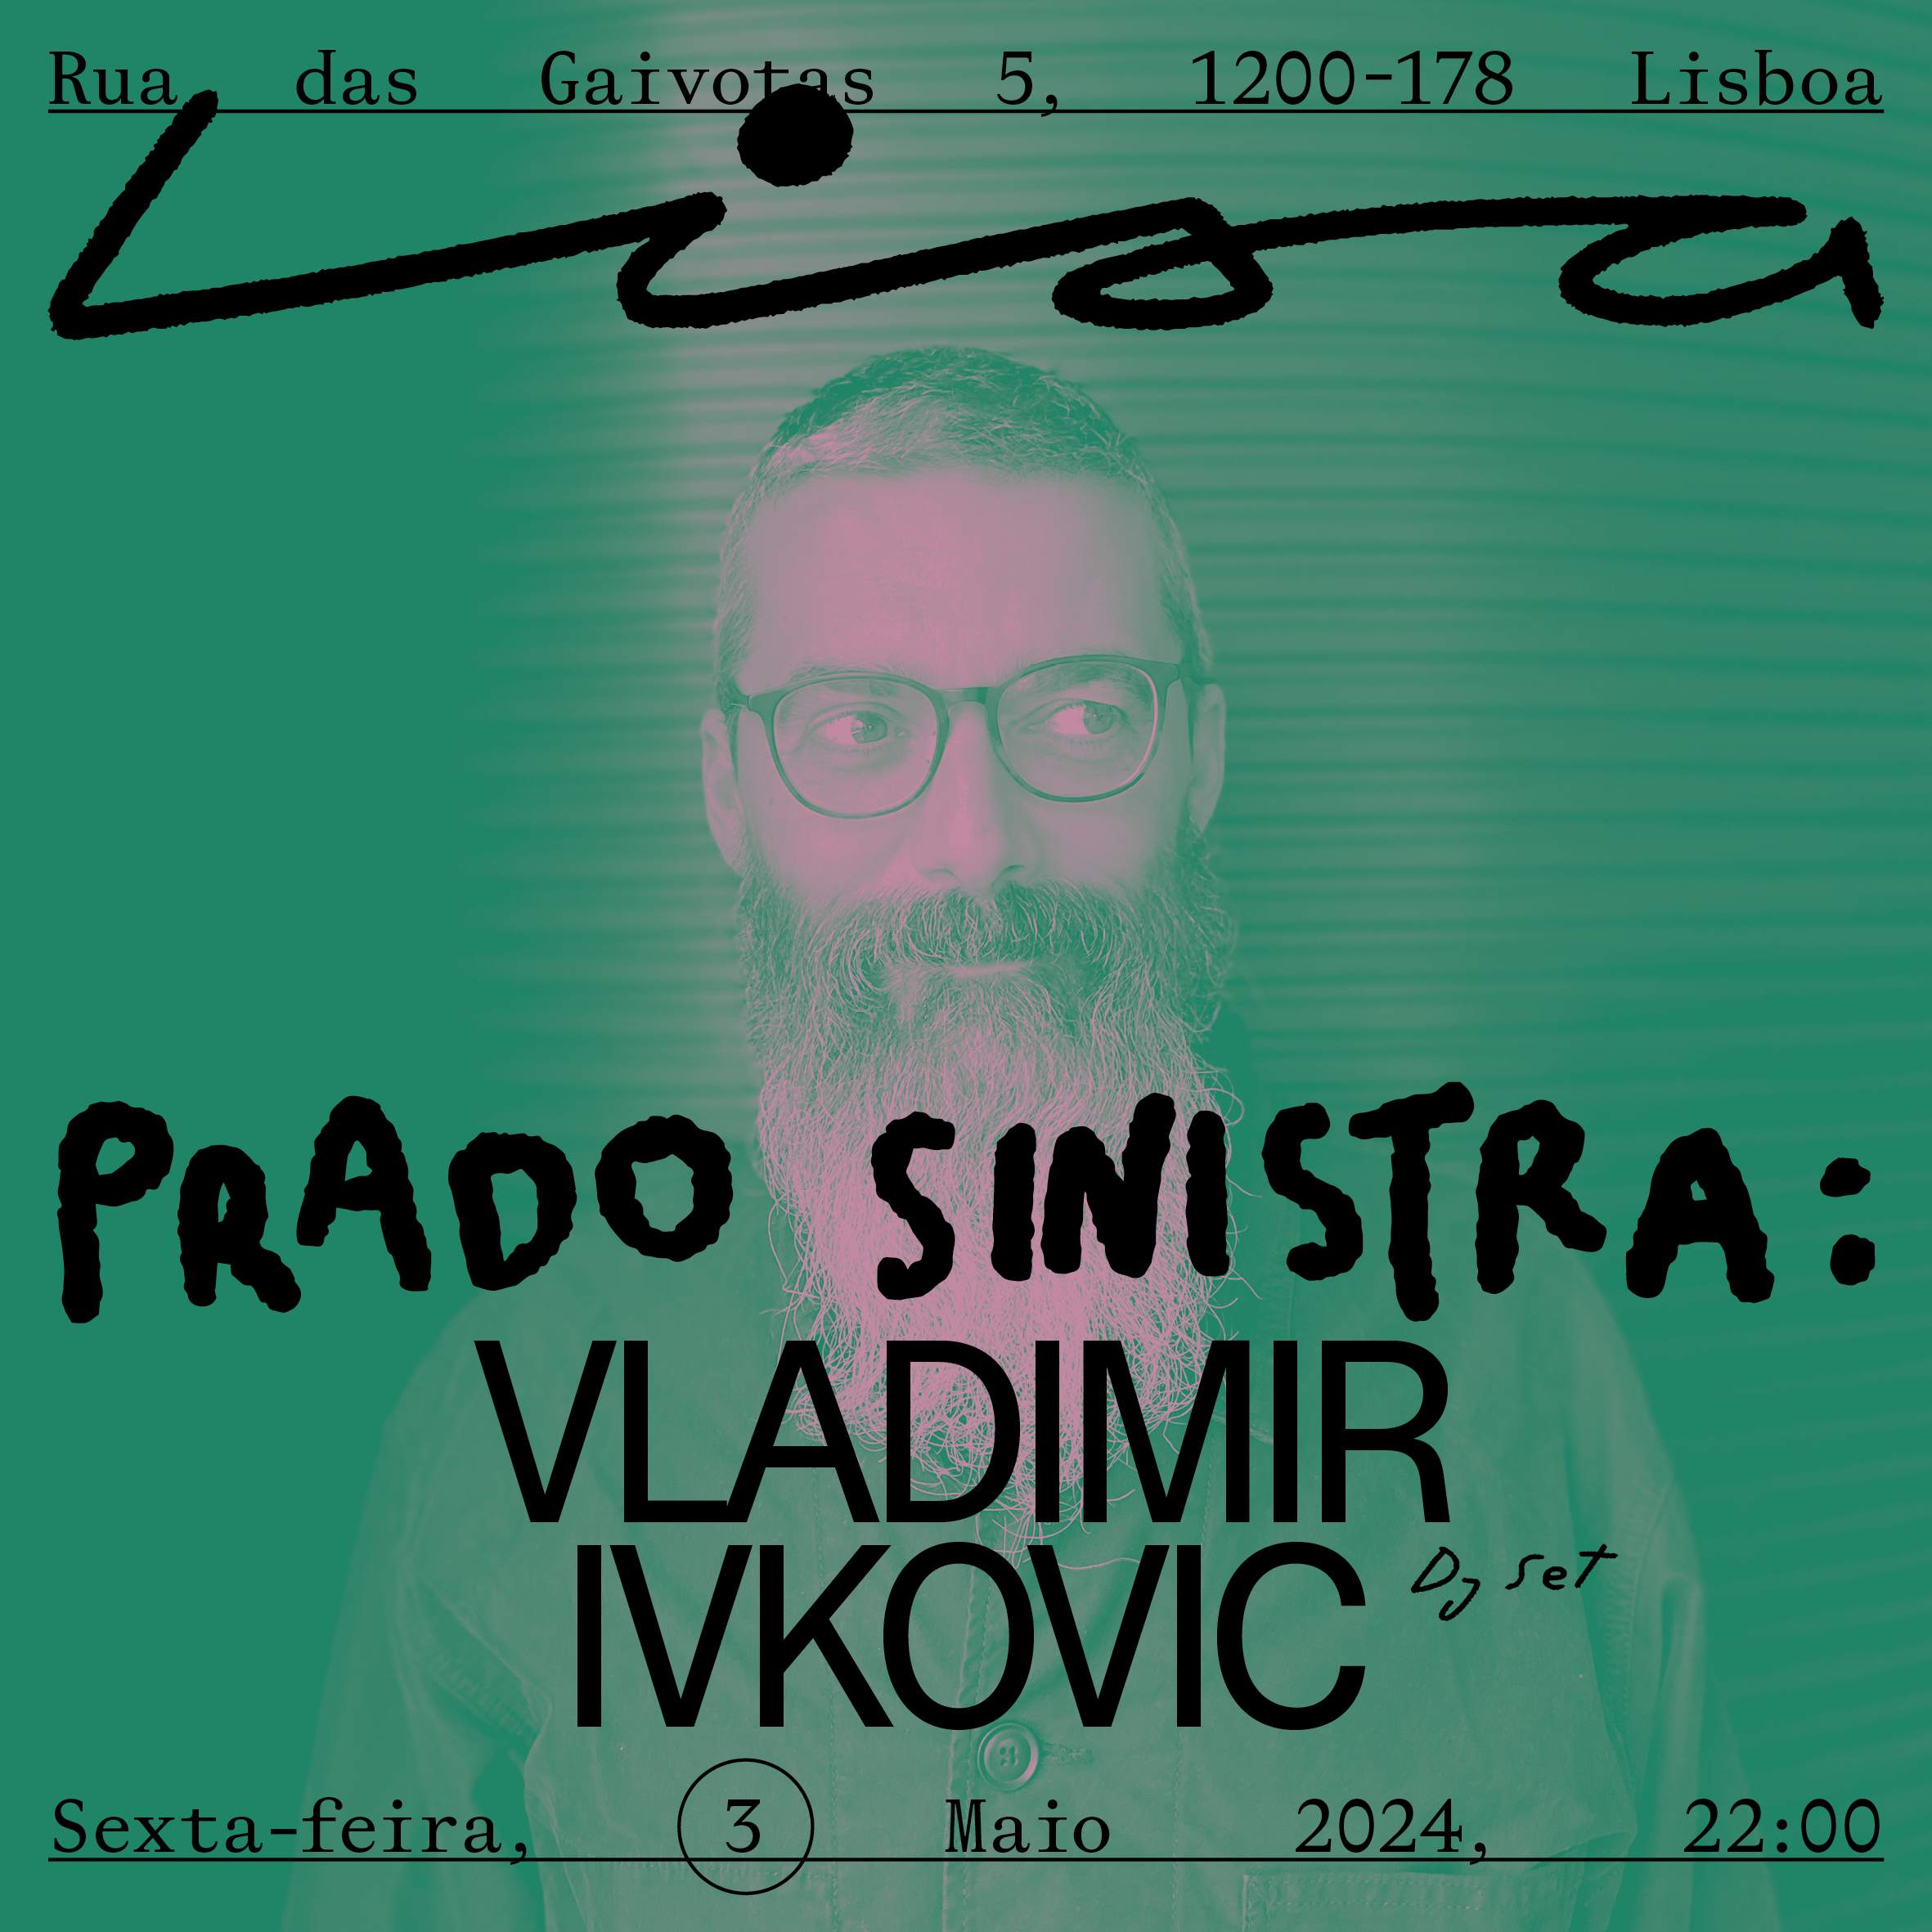 Vladimir Ivkovic - Página frontal